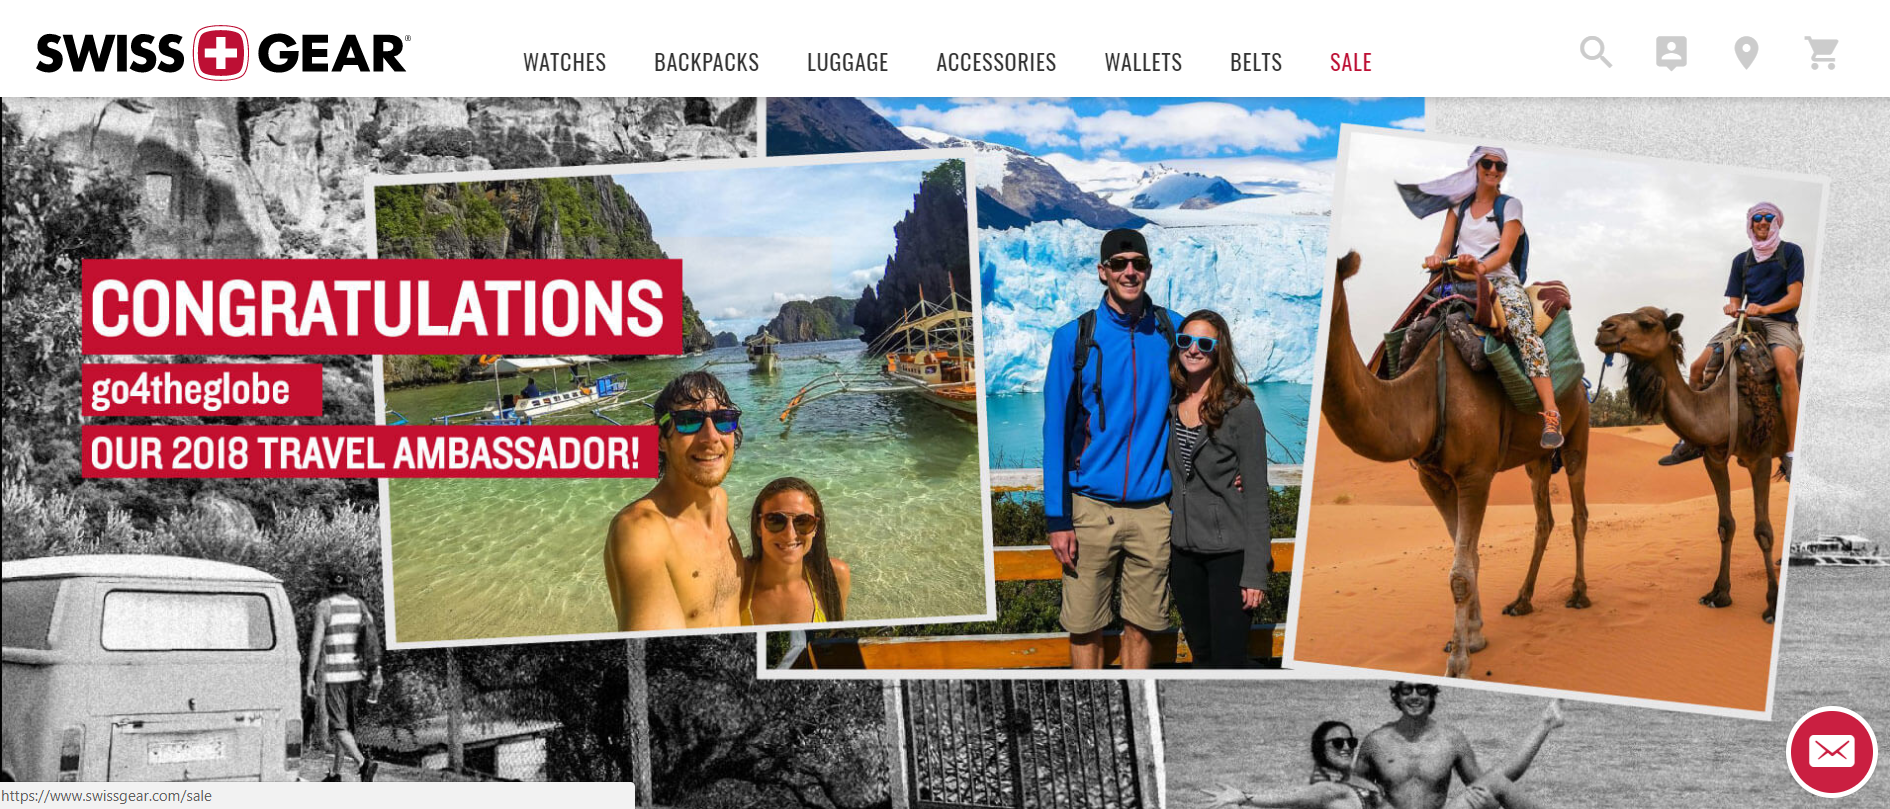 Swissgear 2018 Travel Ambassador web banner